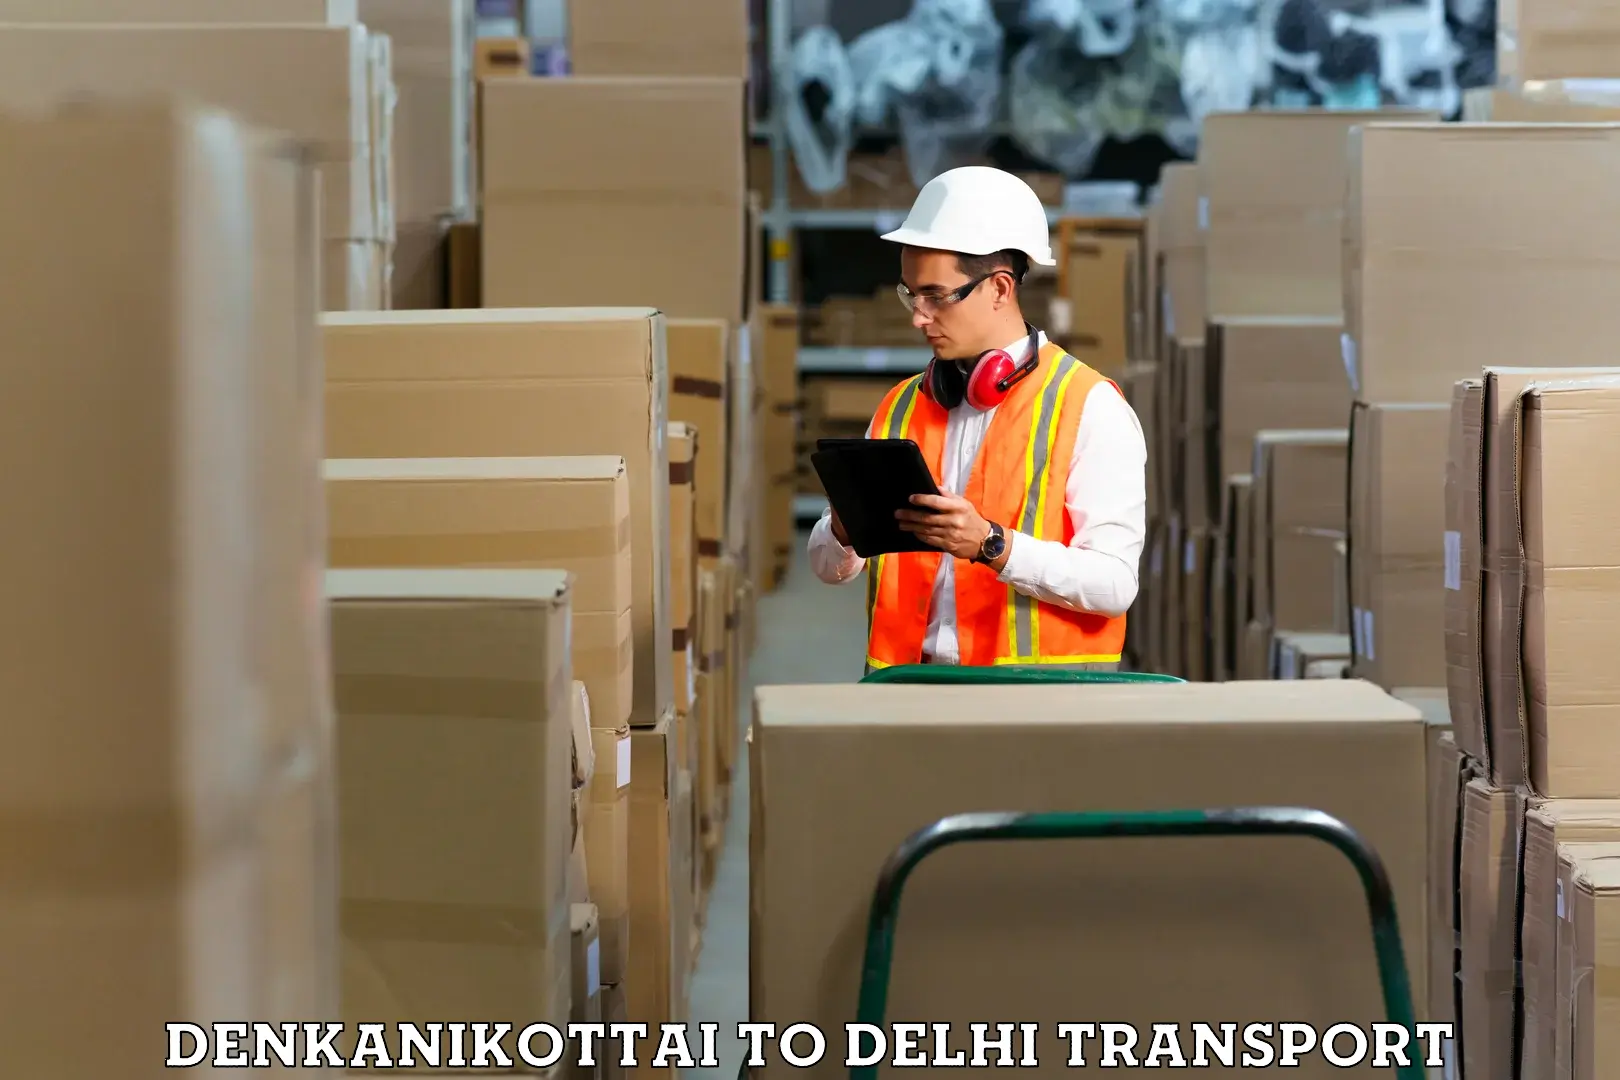 Container transportation services Denkanikottai to NCR